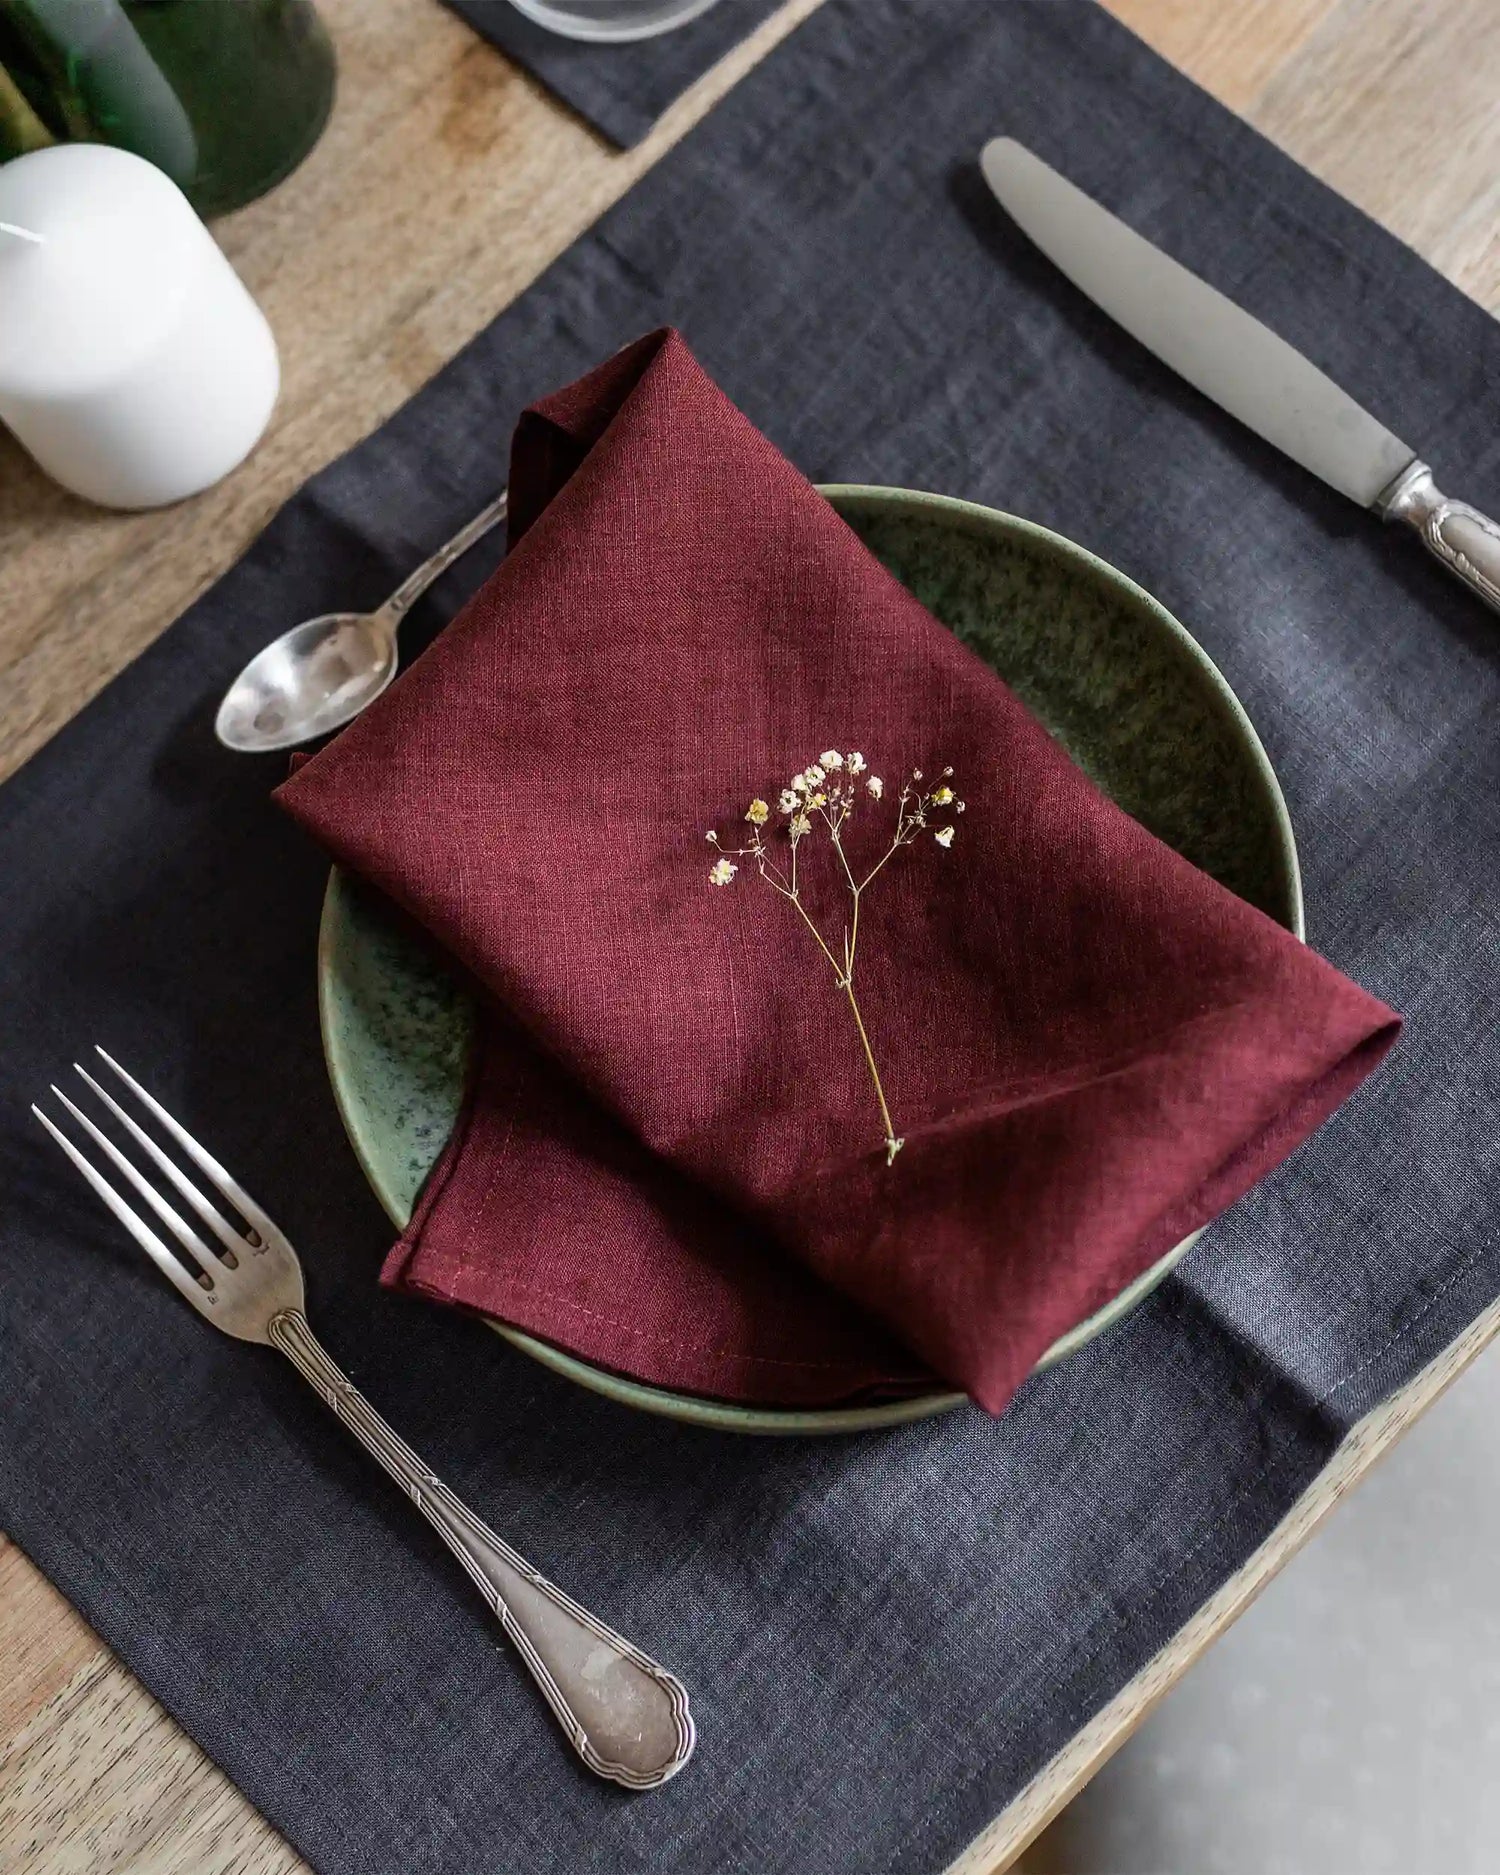 En röd tygservett i linne ligger på en tallrik tillsammans med en bordstablett i linne och silvriga bestick. 